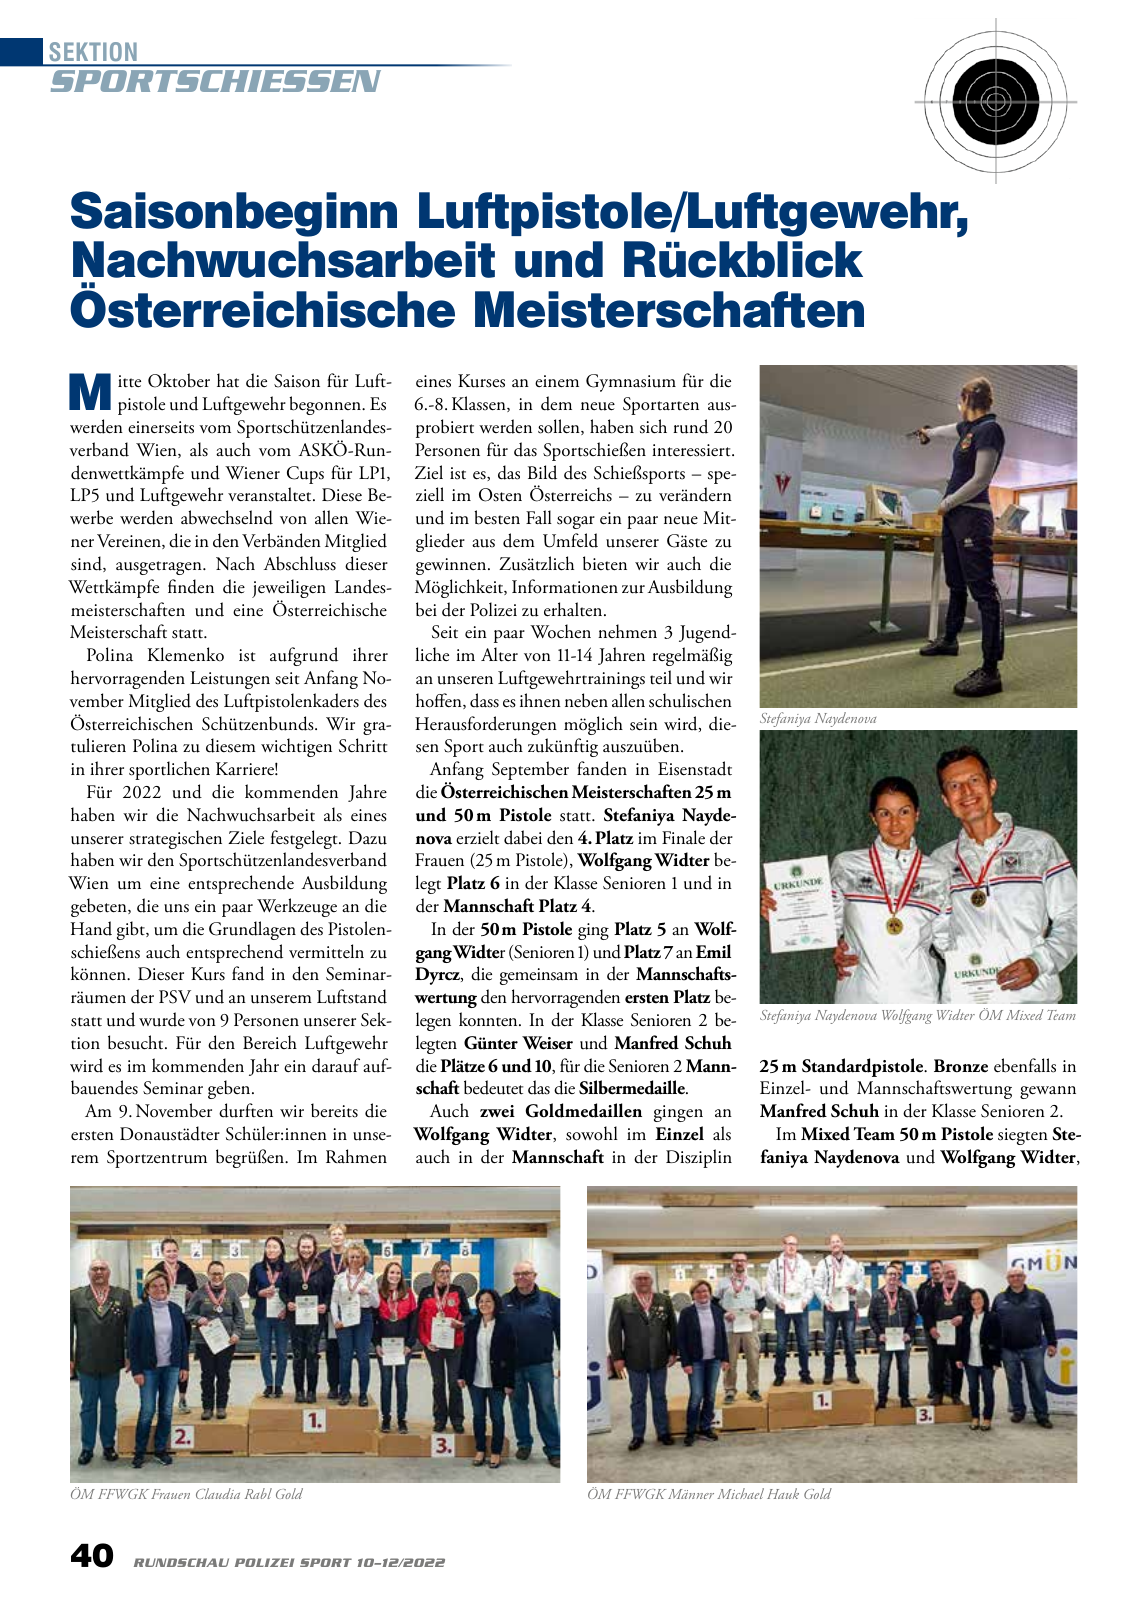 Vorschau Rundschau Polizei Sport 10-12/2022 Seite 40